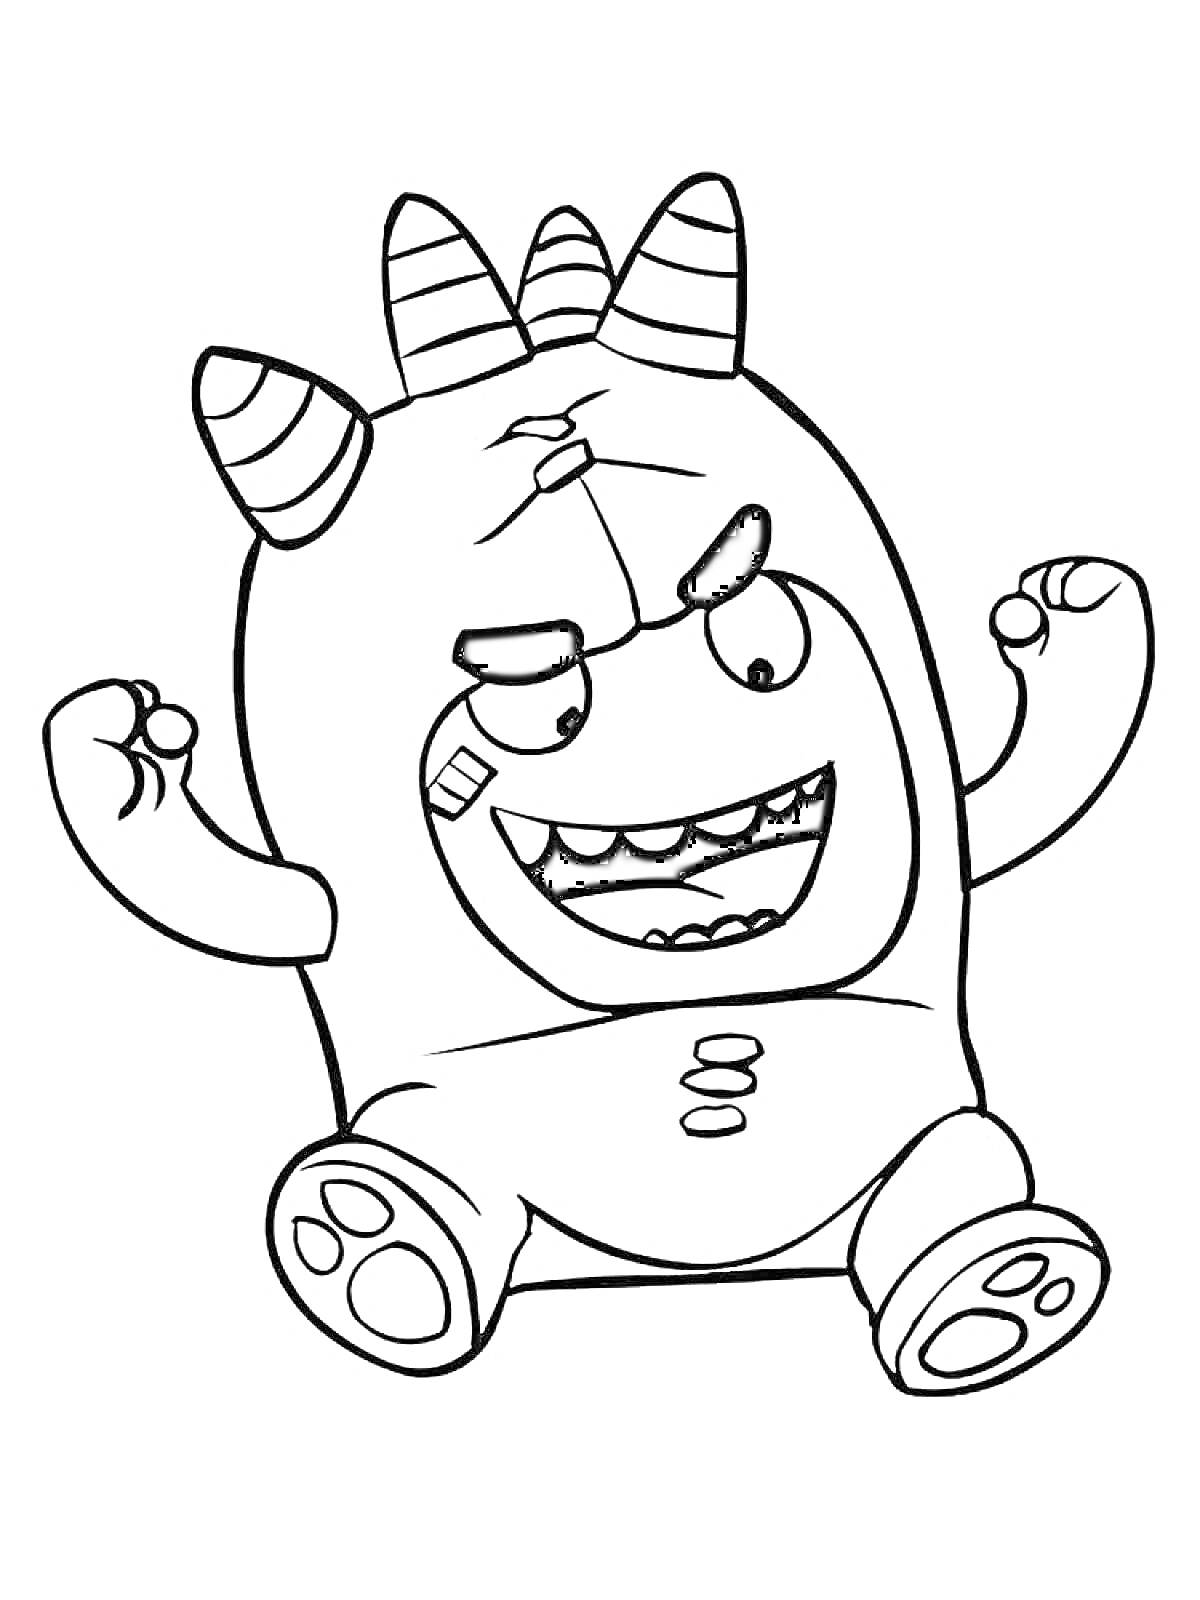 Раскраска Чудик с тремя полосатыми рожками, сидящий со взъерошенными зубами и поднятыми руками